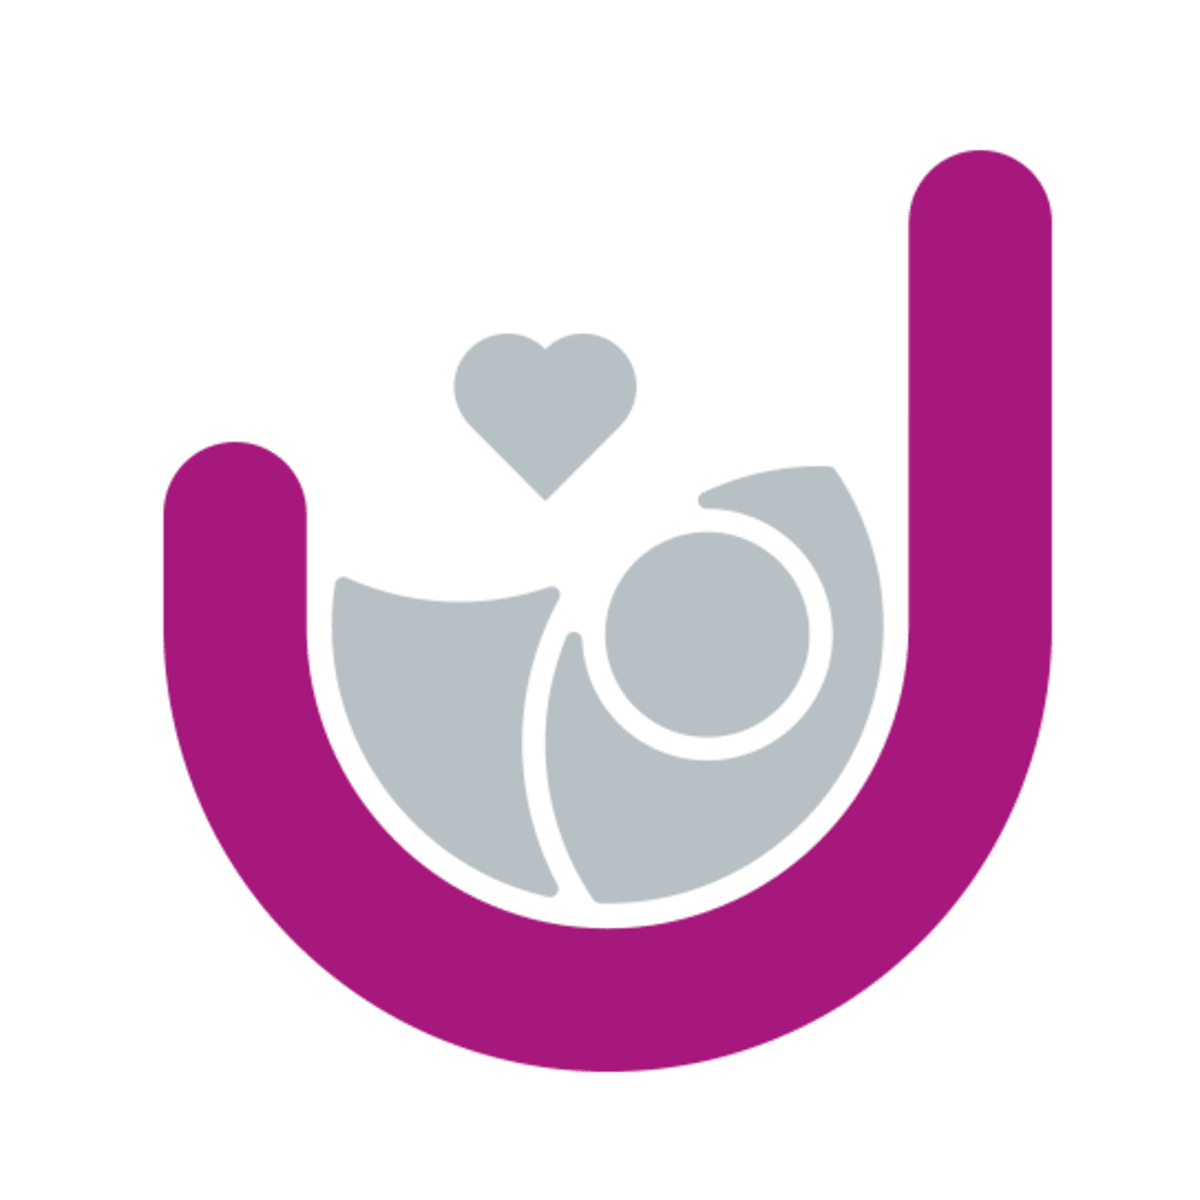 Nedoklubko je spolek podporující rodiče předčasně narozených dětí aneonatologickáoddělení v České republice.